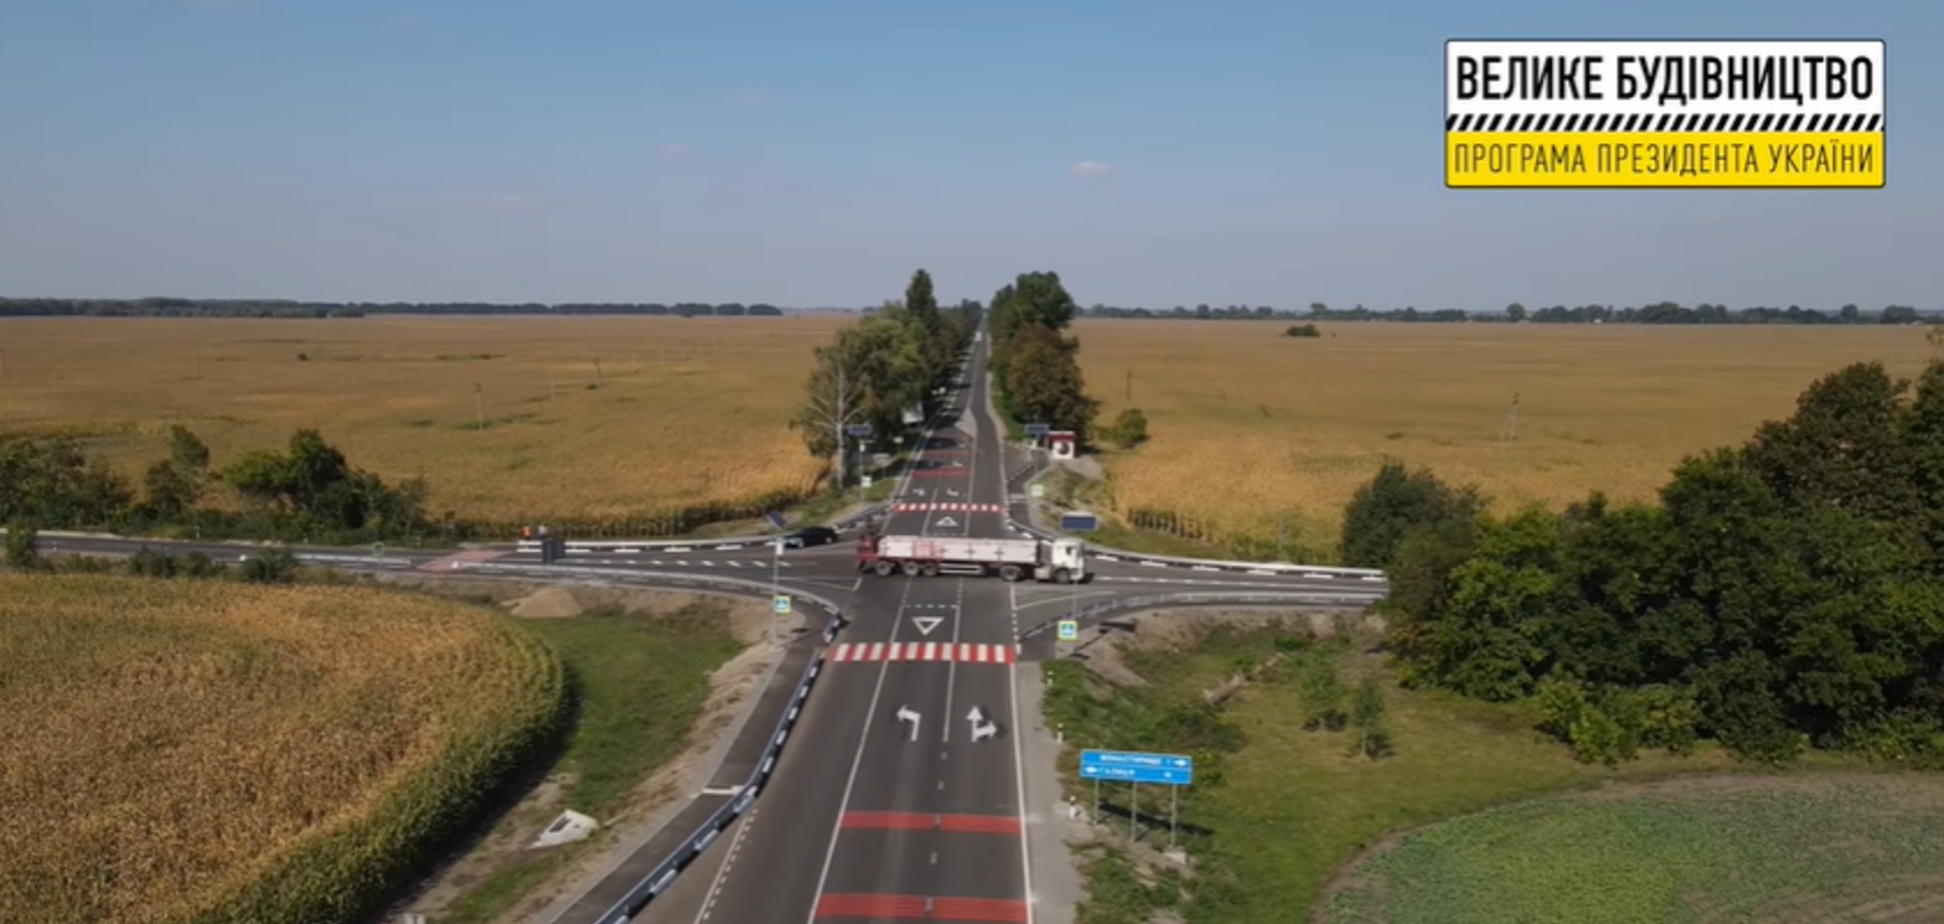 'Большая стройка' Зеленского отремонтировала 75 км трассы между Нежином и Прилуками